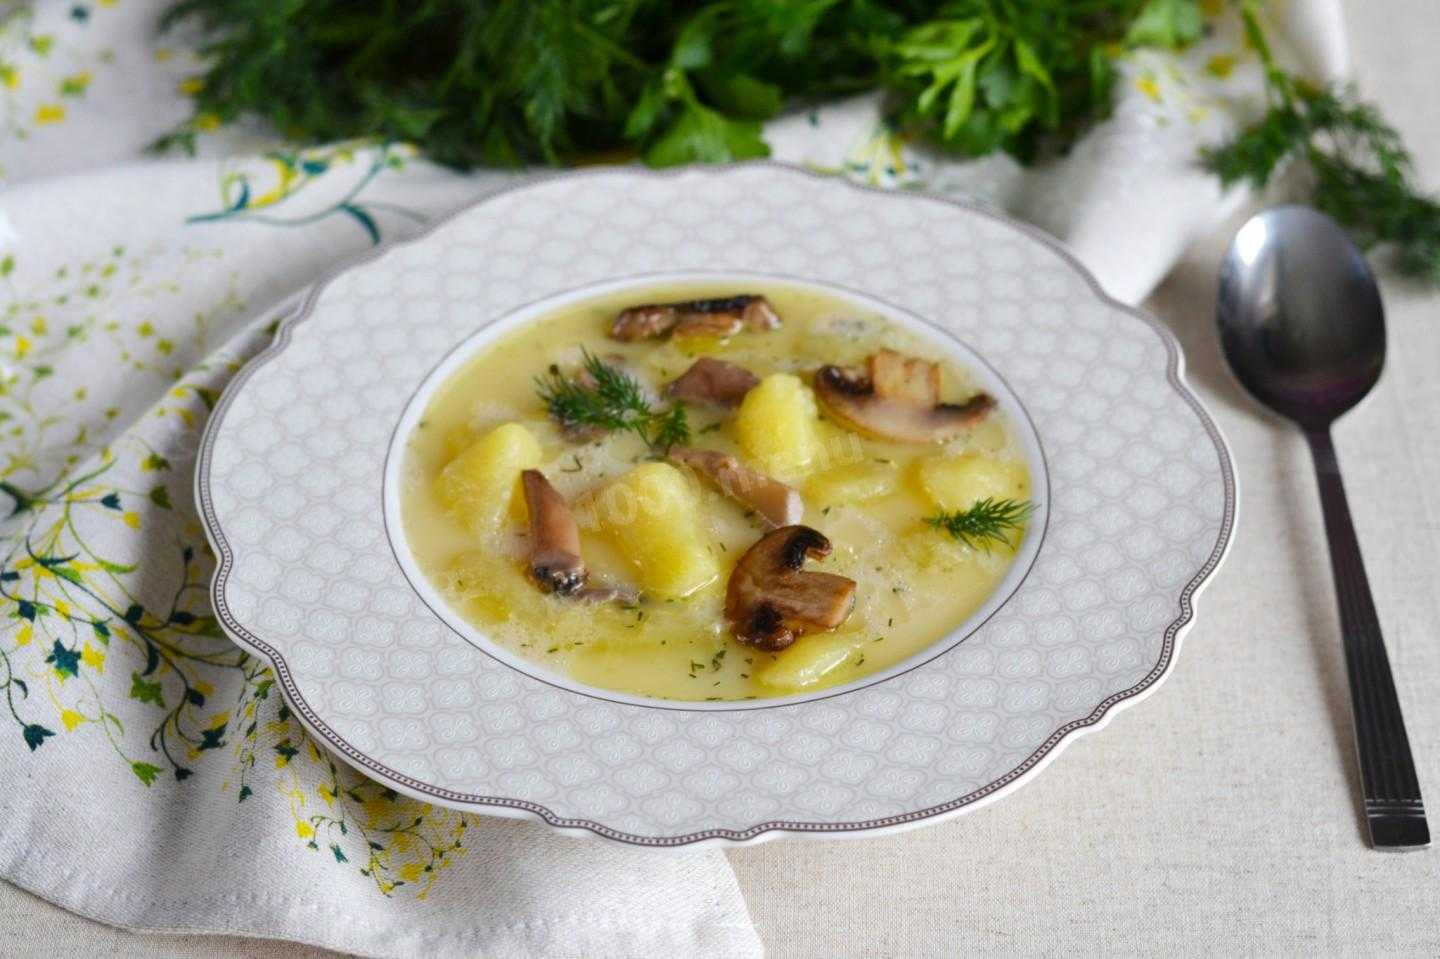 Суп из сушеных грибов — лучшие рецепты. как правильно и вкусно сварить суп из сушеных грибов.